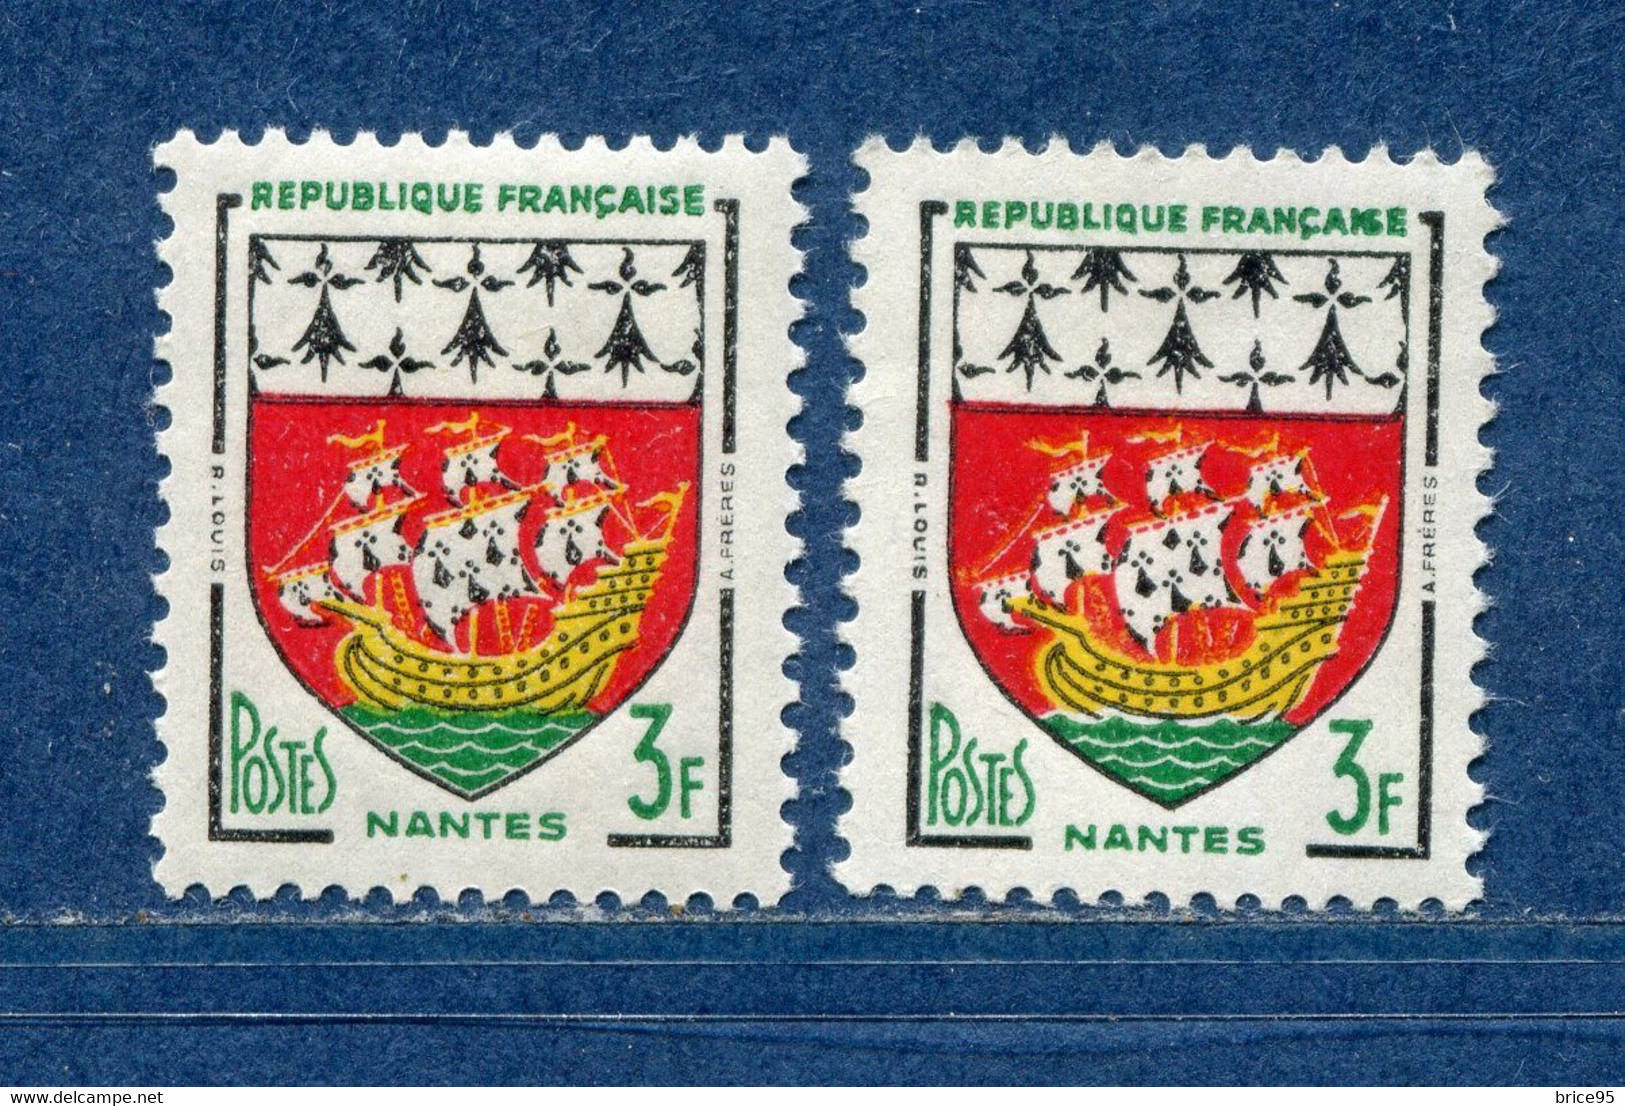 ⭐ France - Variété - YT N° 1185 - Couleurs - Pétouilles - Neuf Sans Charnière - 1958 ⭐ - Neufs